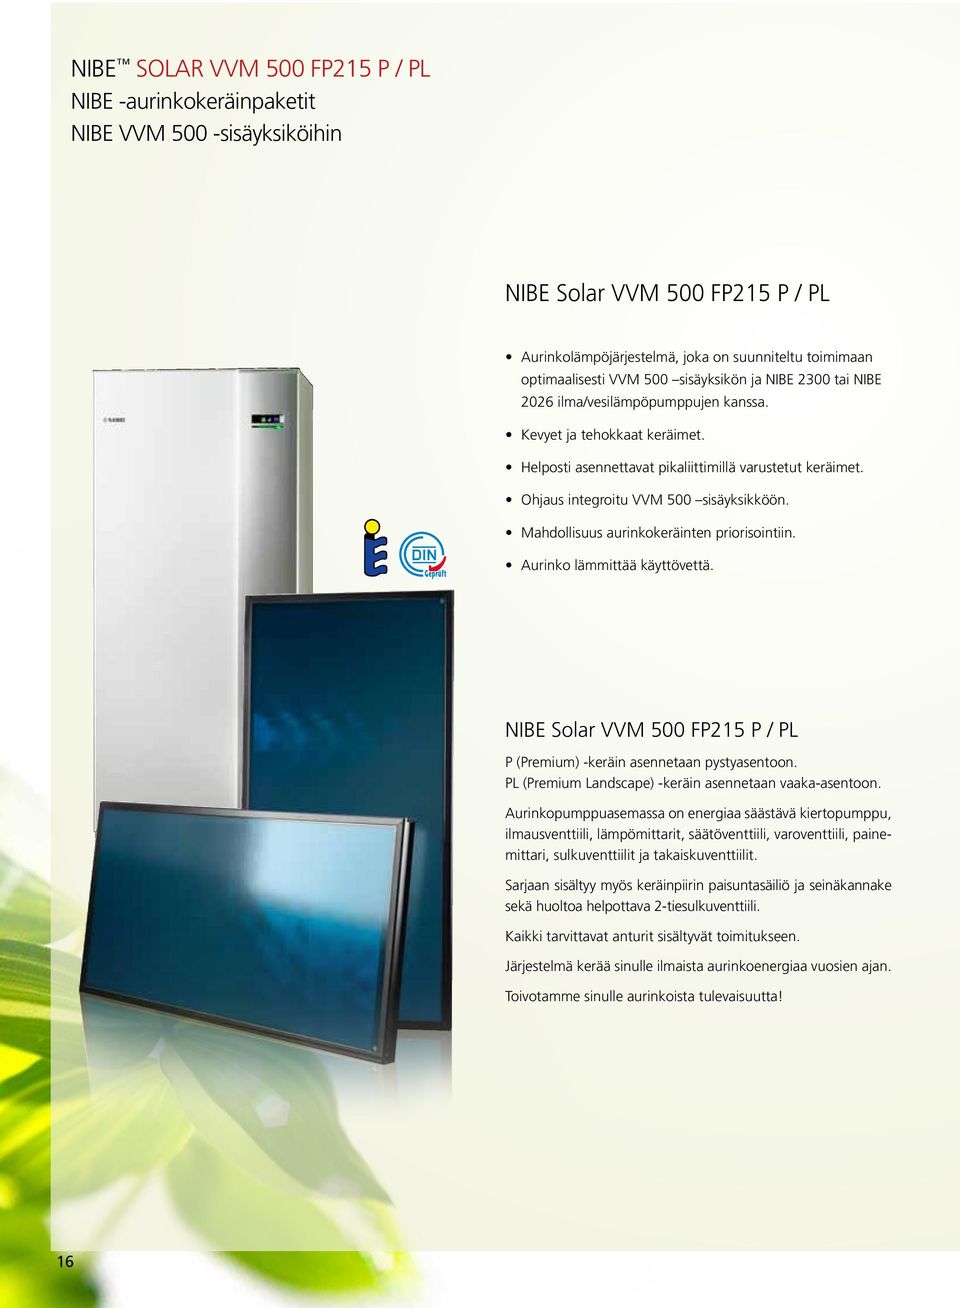 Mahdollisuus aurinkokeräinten priorisointiin. Aurinko lämmittää käyttövettä. NIBE Solar VVM 500 FP215 P / PL P (Premium) -keräin asennetaan pystyasentoon.